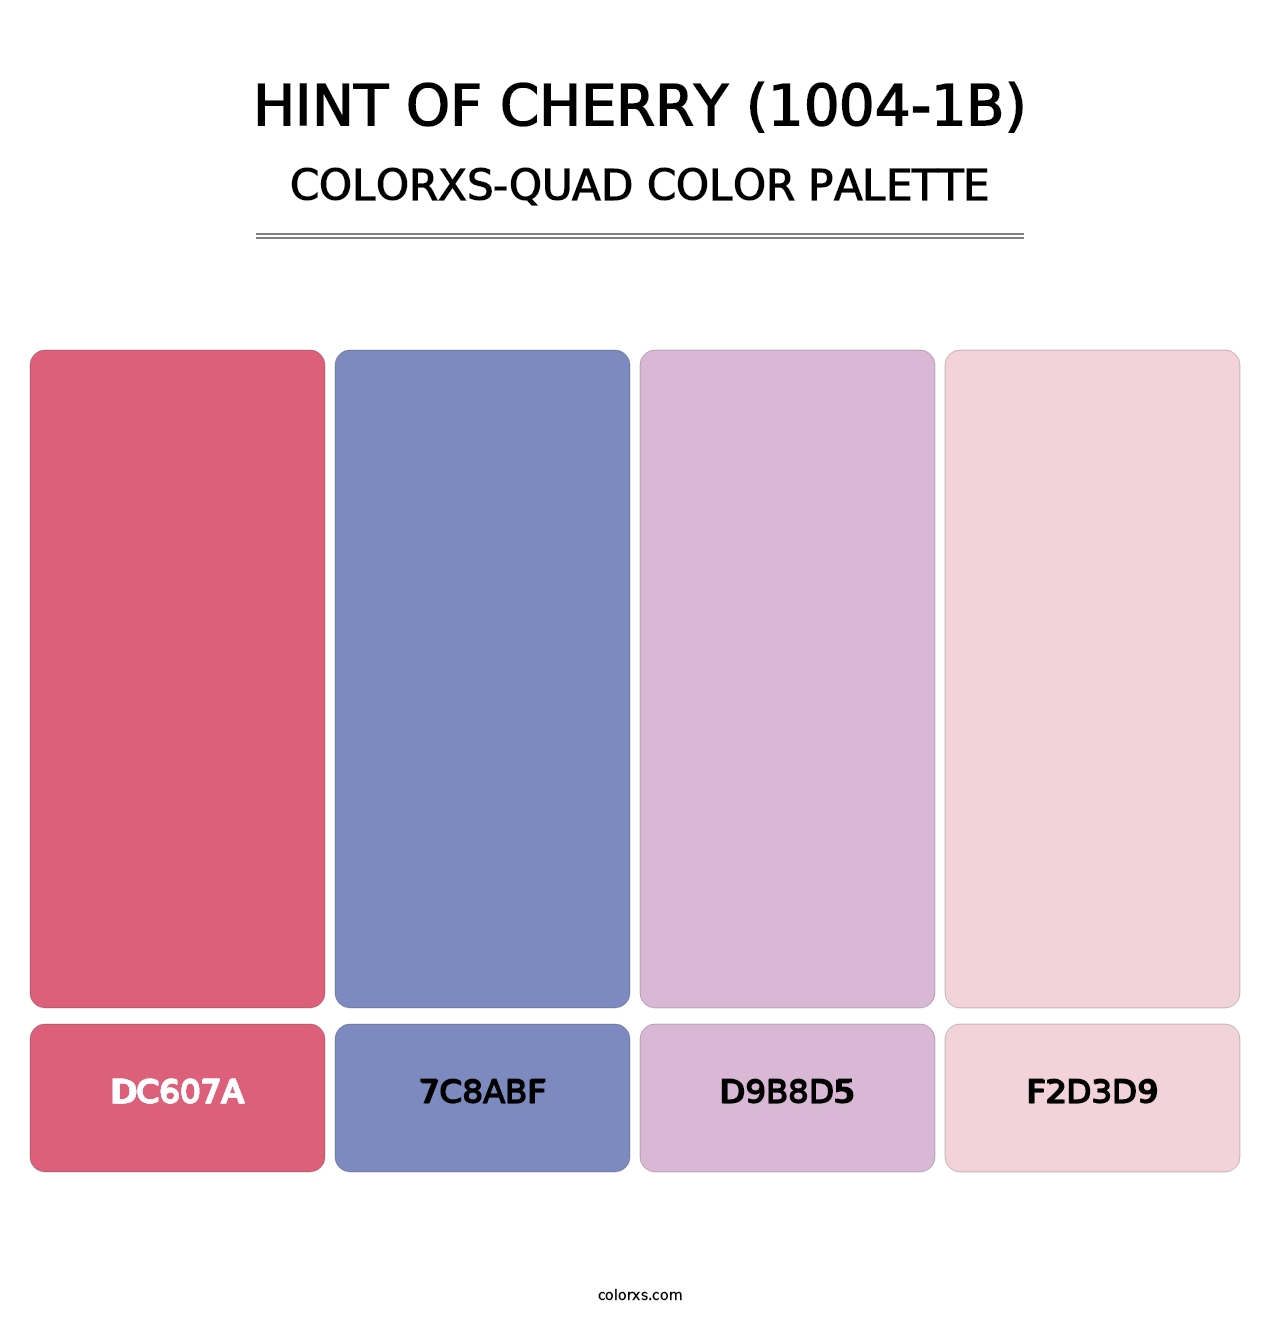 Hint of Cherry (1004-1B) - Colorxs Quad Palette